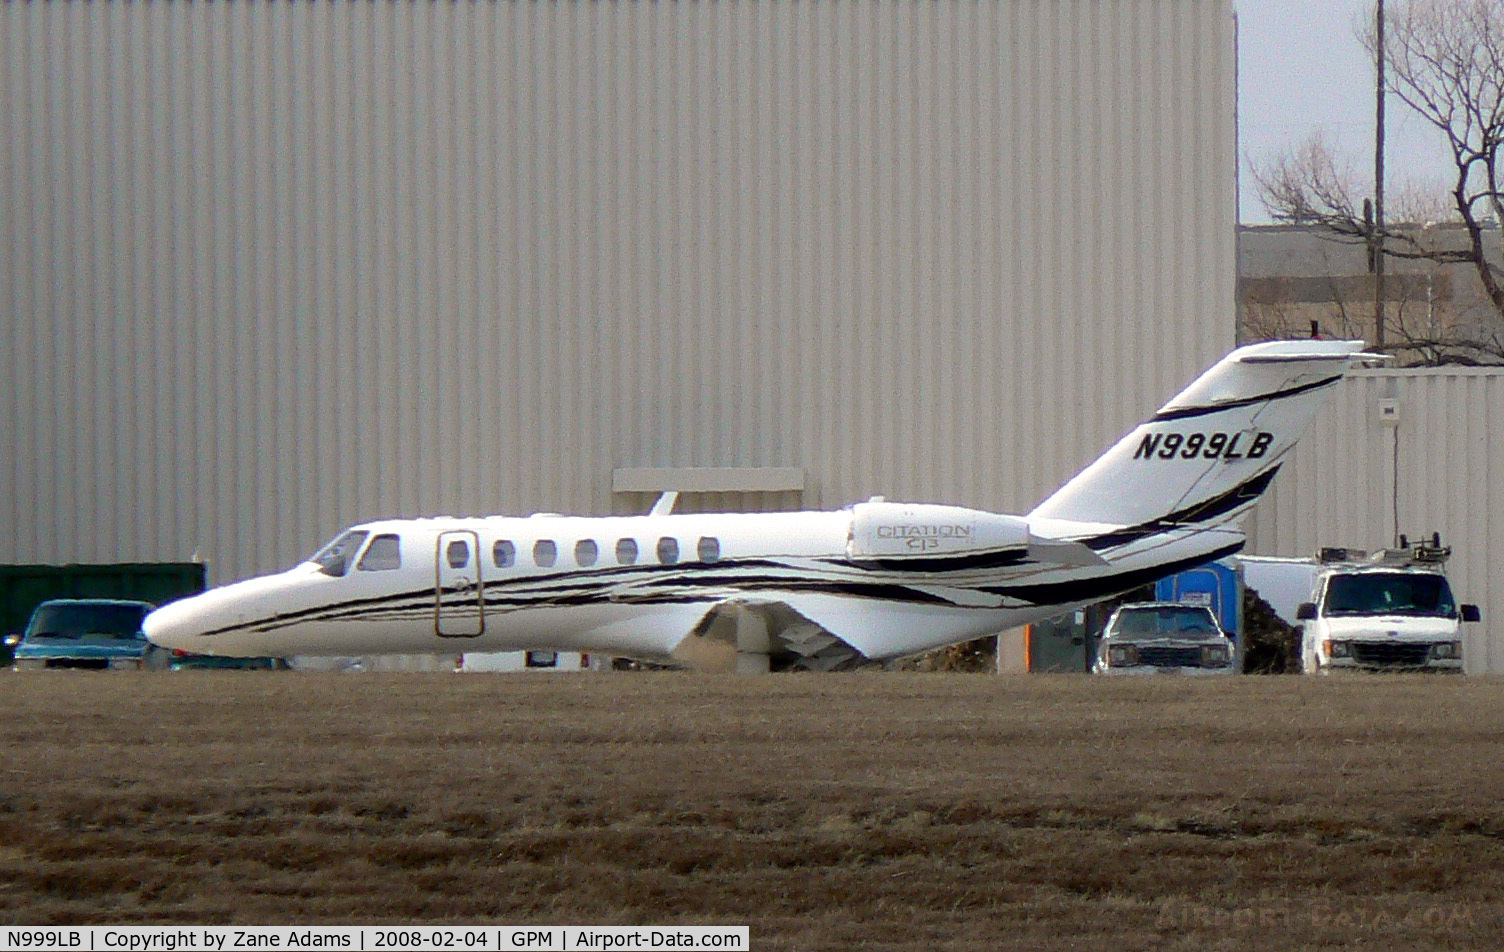 N999LB, 2005 Cessna 525B C/N 525B-0057, Parked at American Eurocopter - Grand Prairie, TX